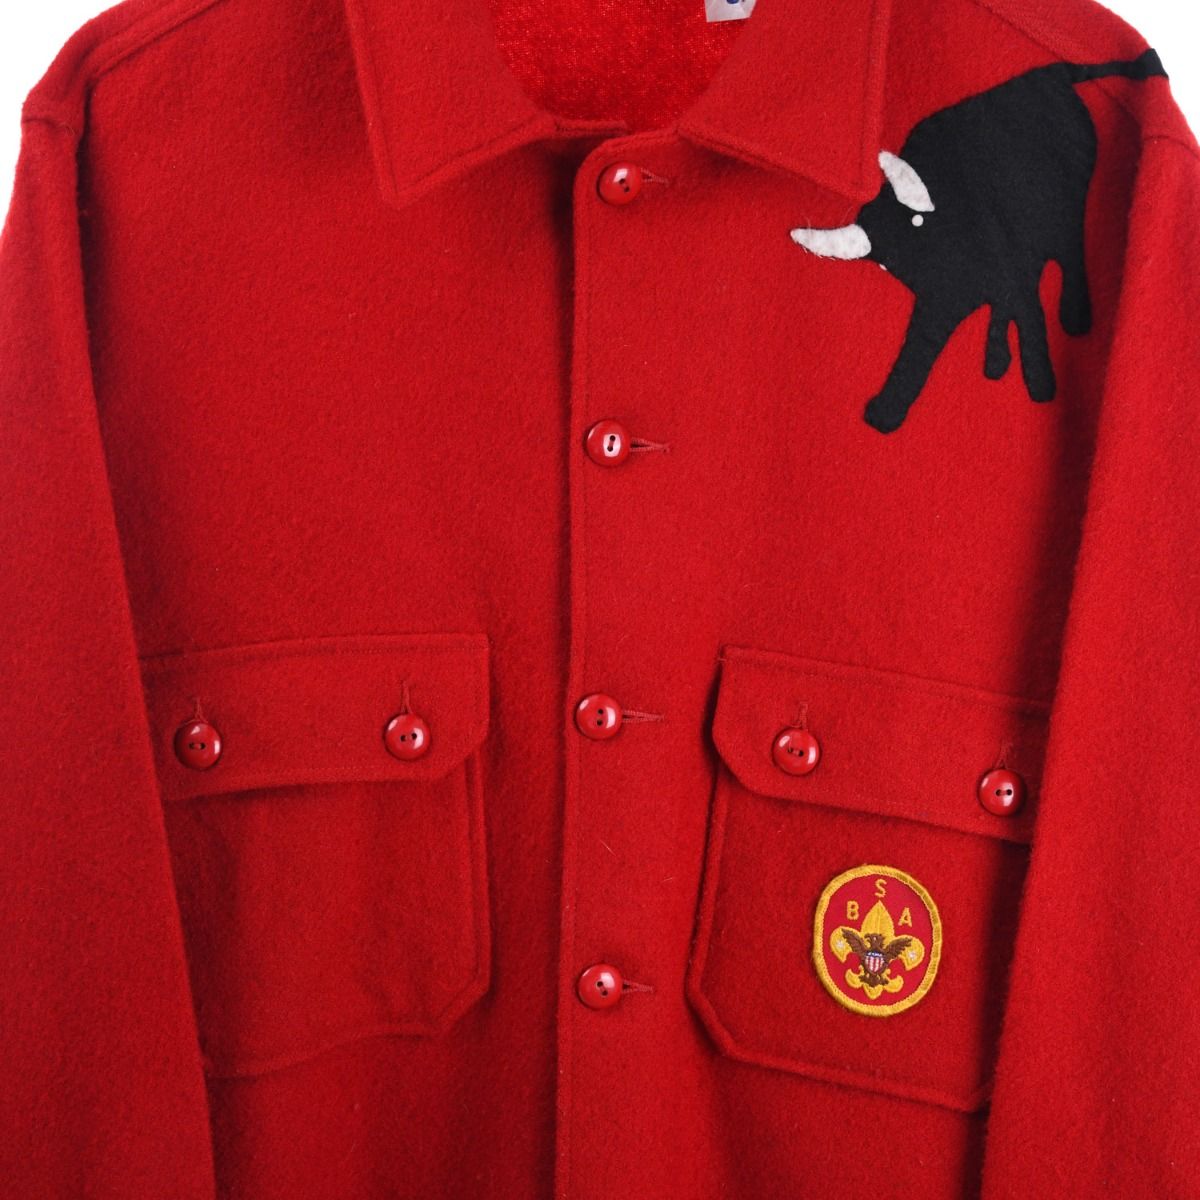 Boy Scouts of America 1970s Wool Jacket